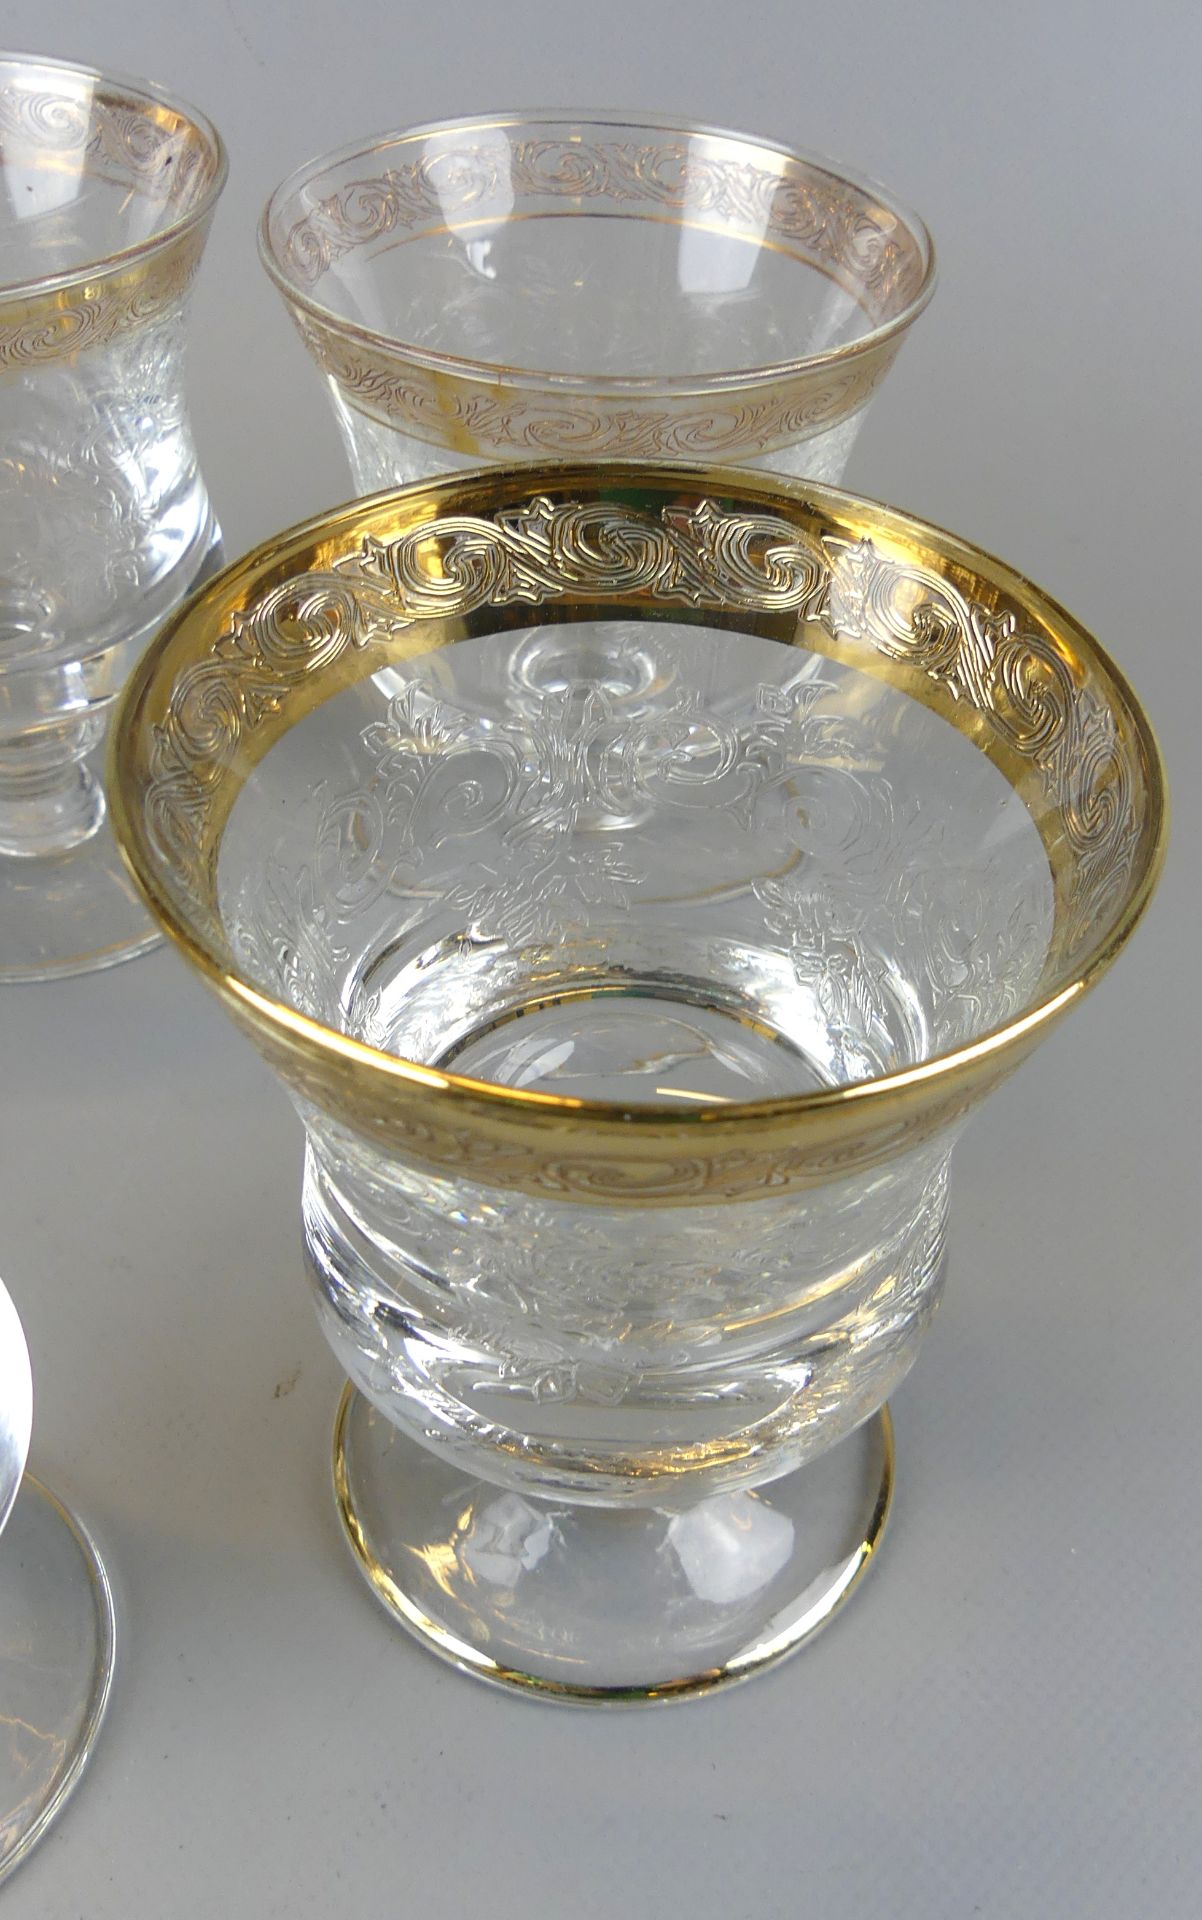 8 Gläser, Kristallglas, Goldrand, geätztes Blumendekor, H. ca. 11 cm - Image 2 of 2